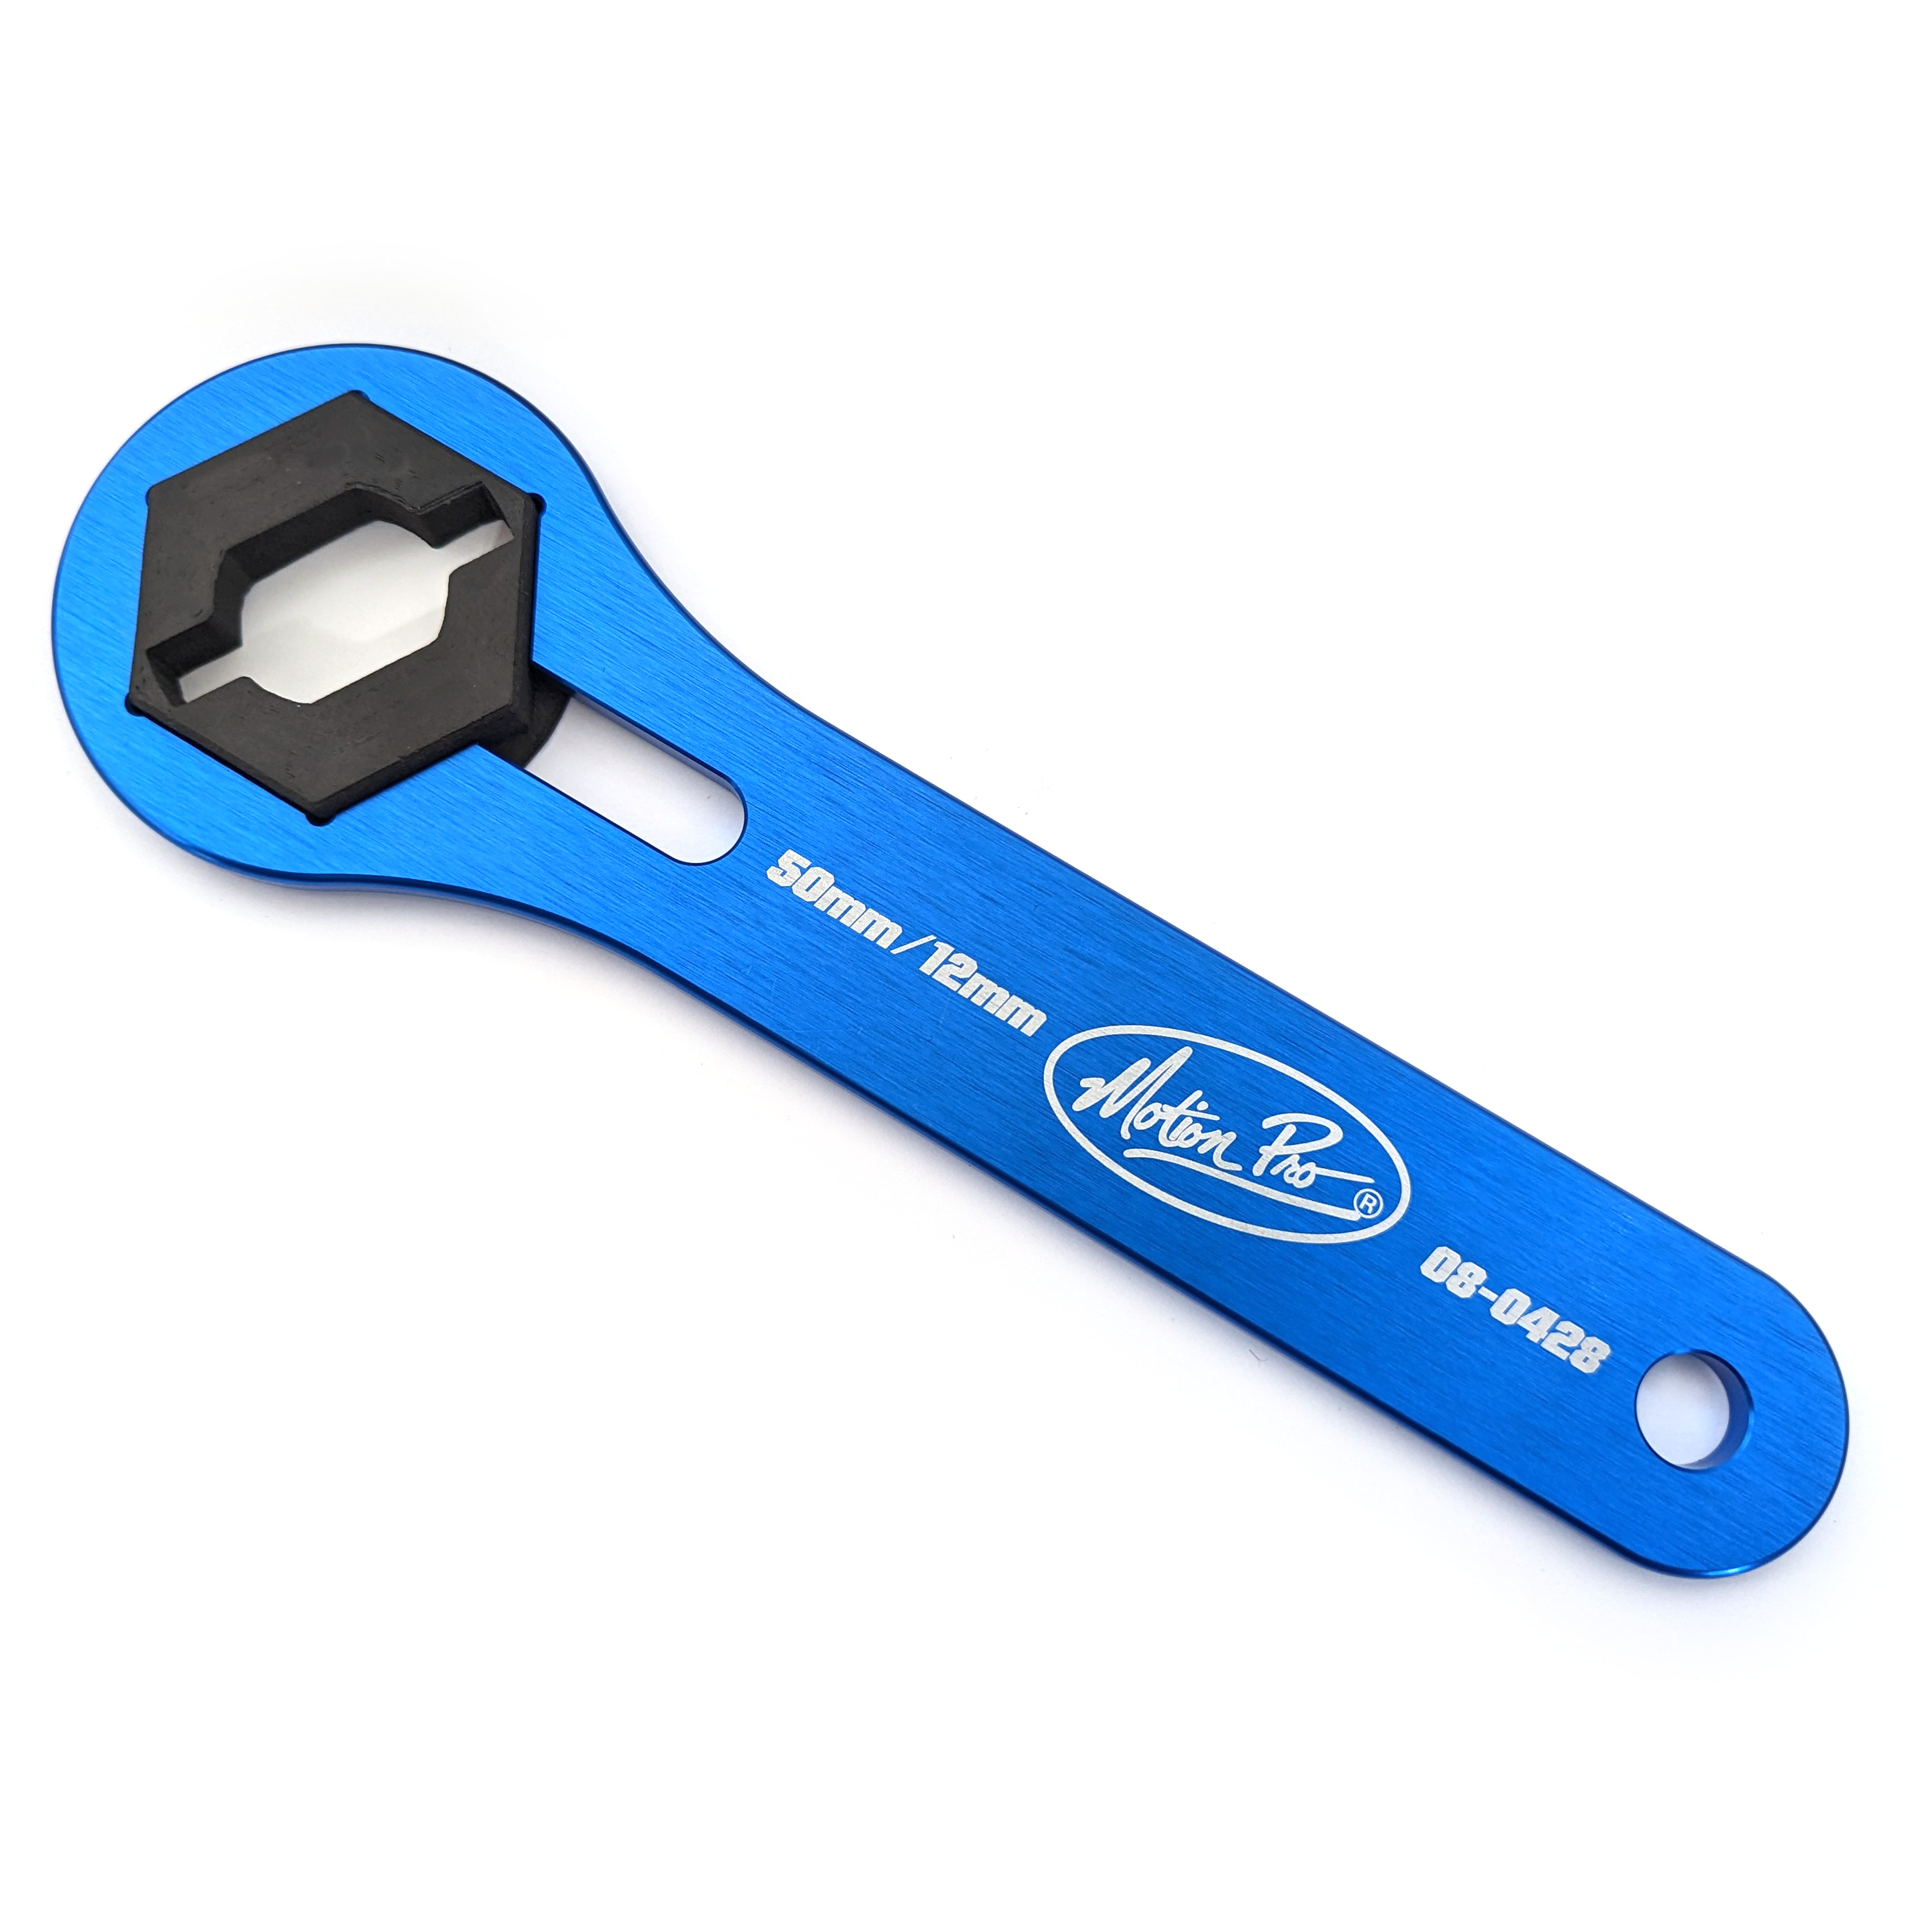 08-0428 50mm Fork Cap Wrench w/ Preload Adjuster Insert For WP Xplor Forks - Click Image to Close